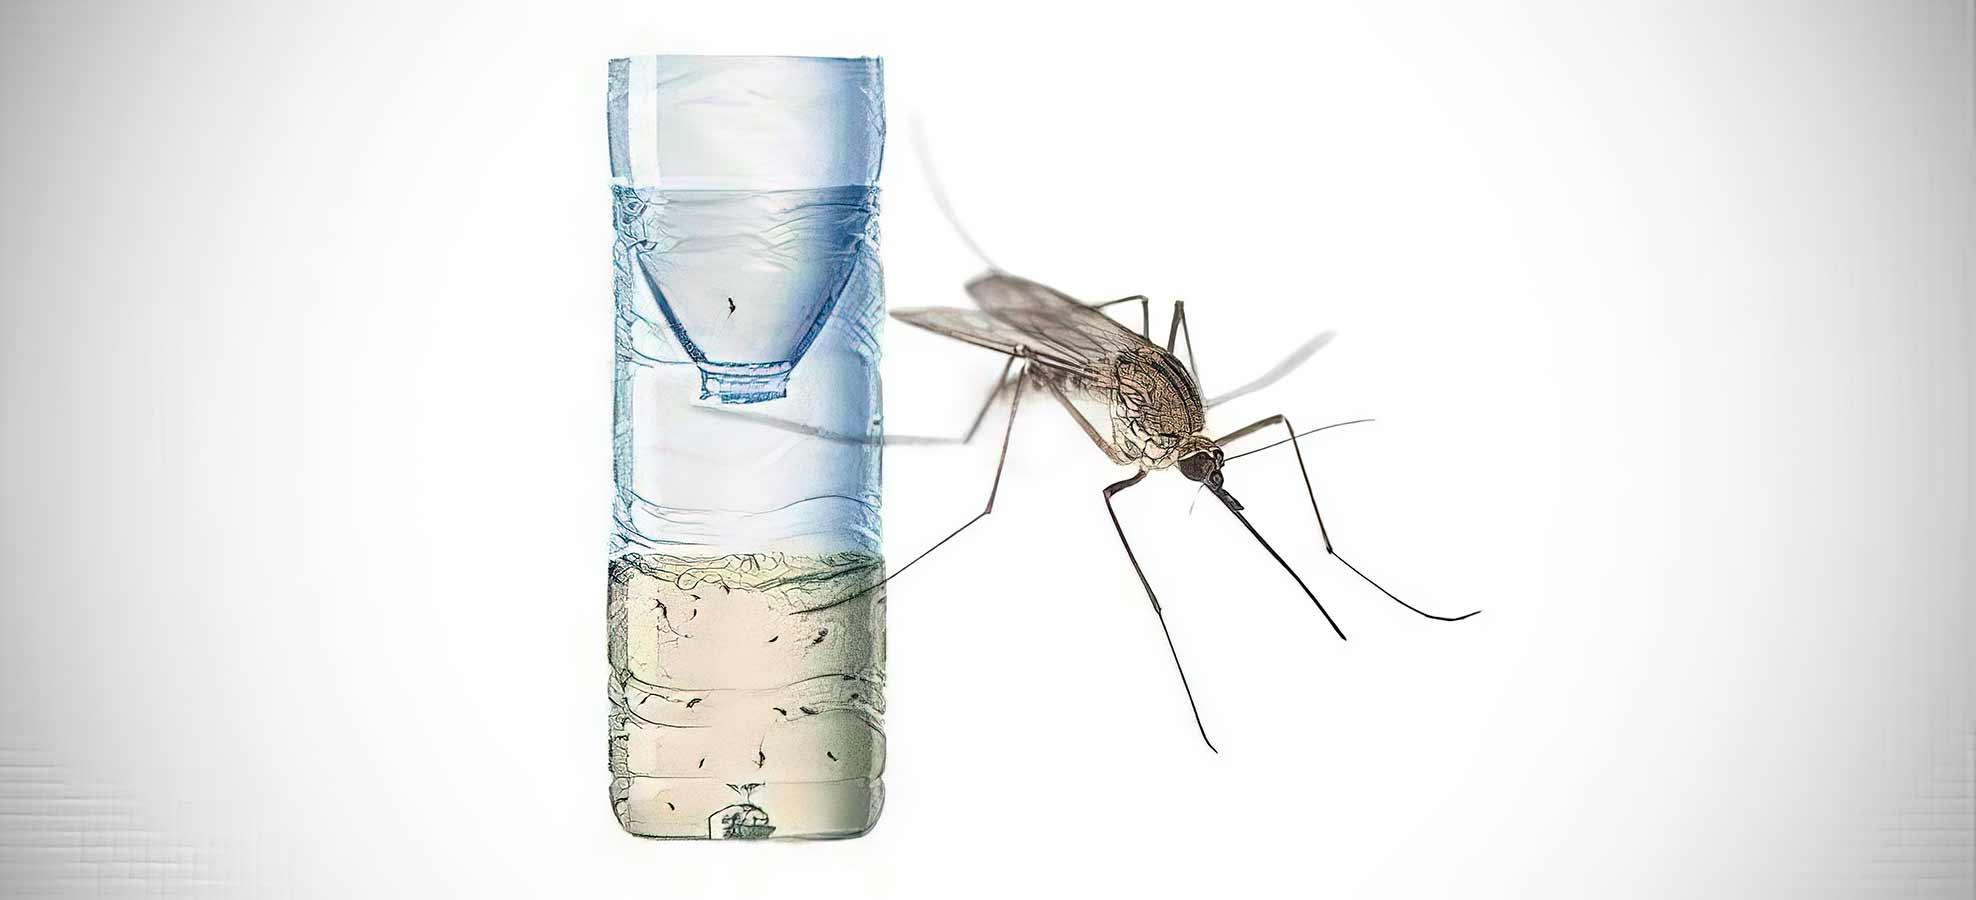 Fabriquer un piège écologique anti moustiques